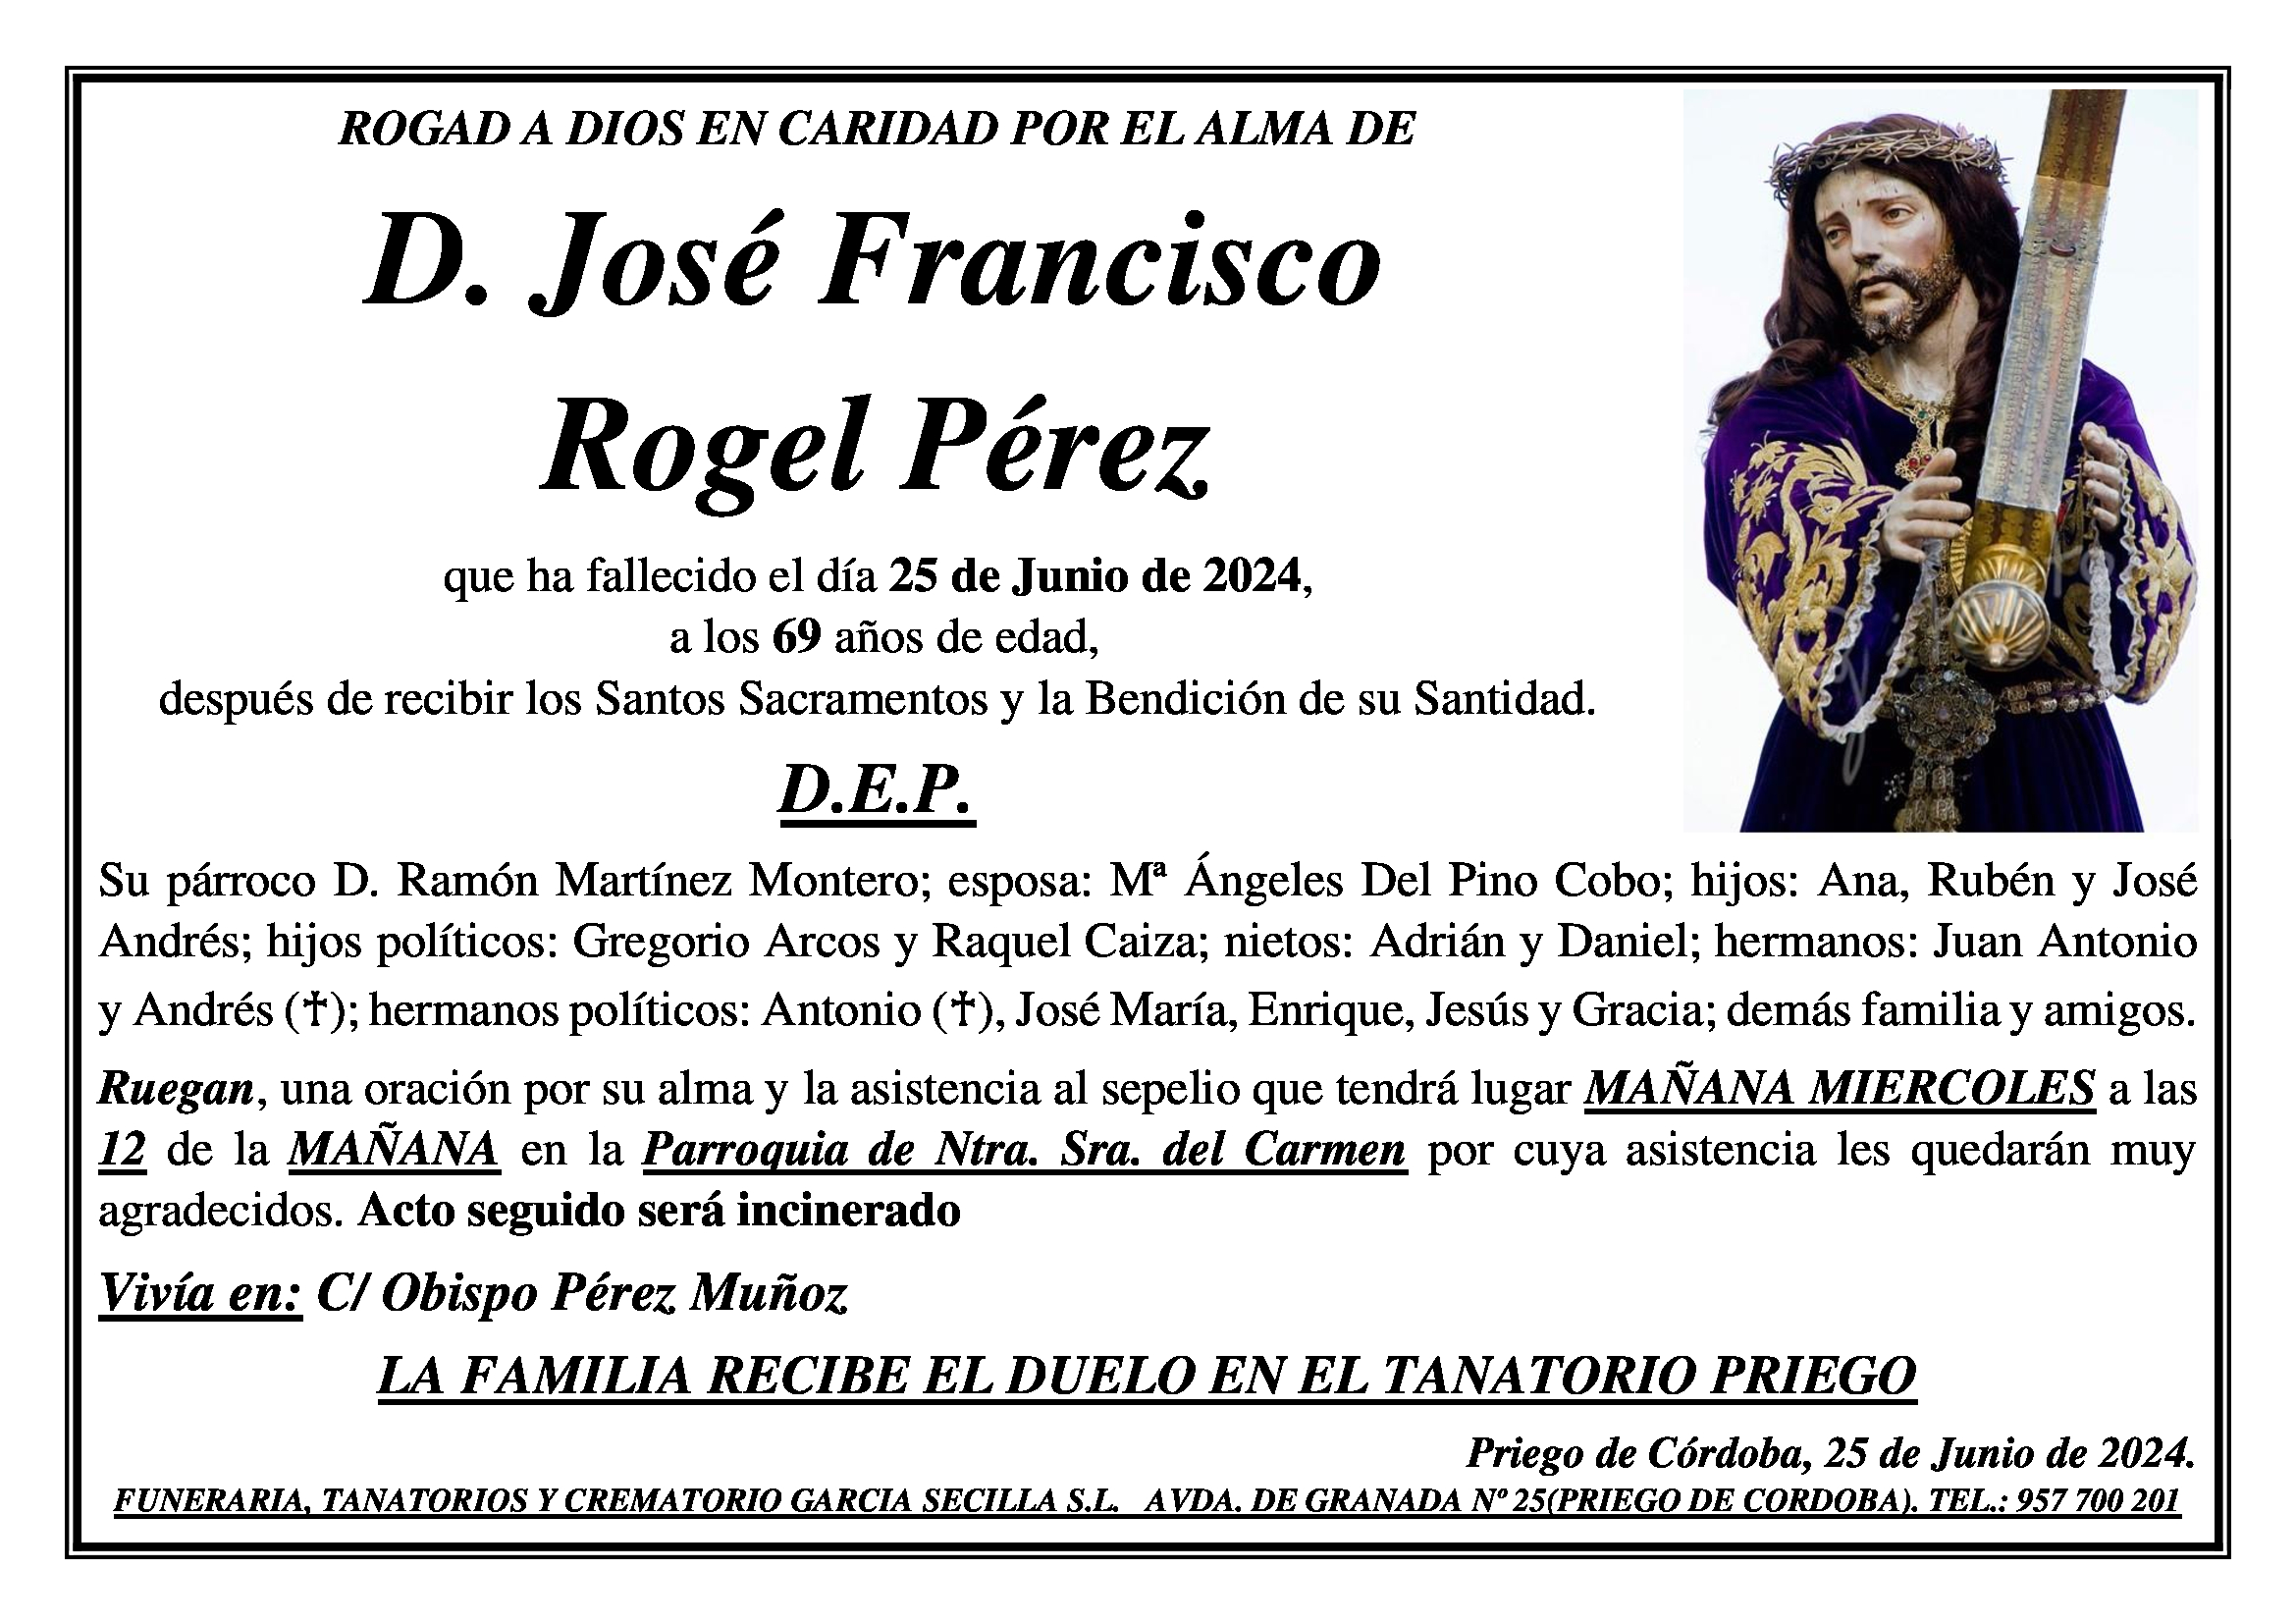 SEPELIO DE D. JOSÉ FRANCISCO ROGEL PÉREZ